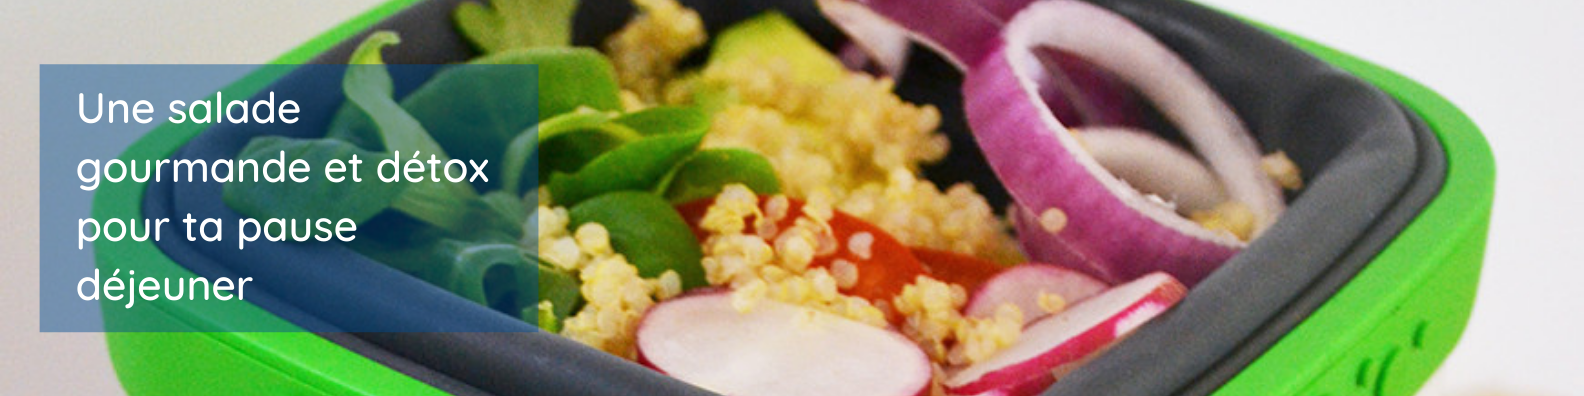 neolid - bannière - Une salade gourmande et détox pour ta pause déjeuner